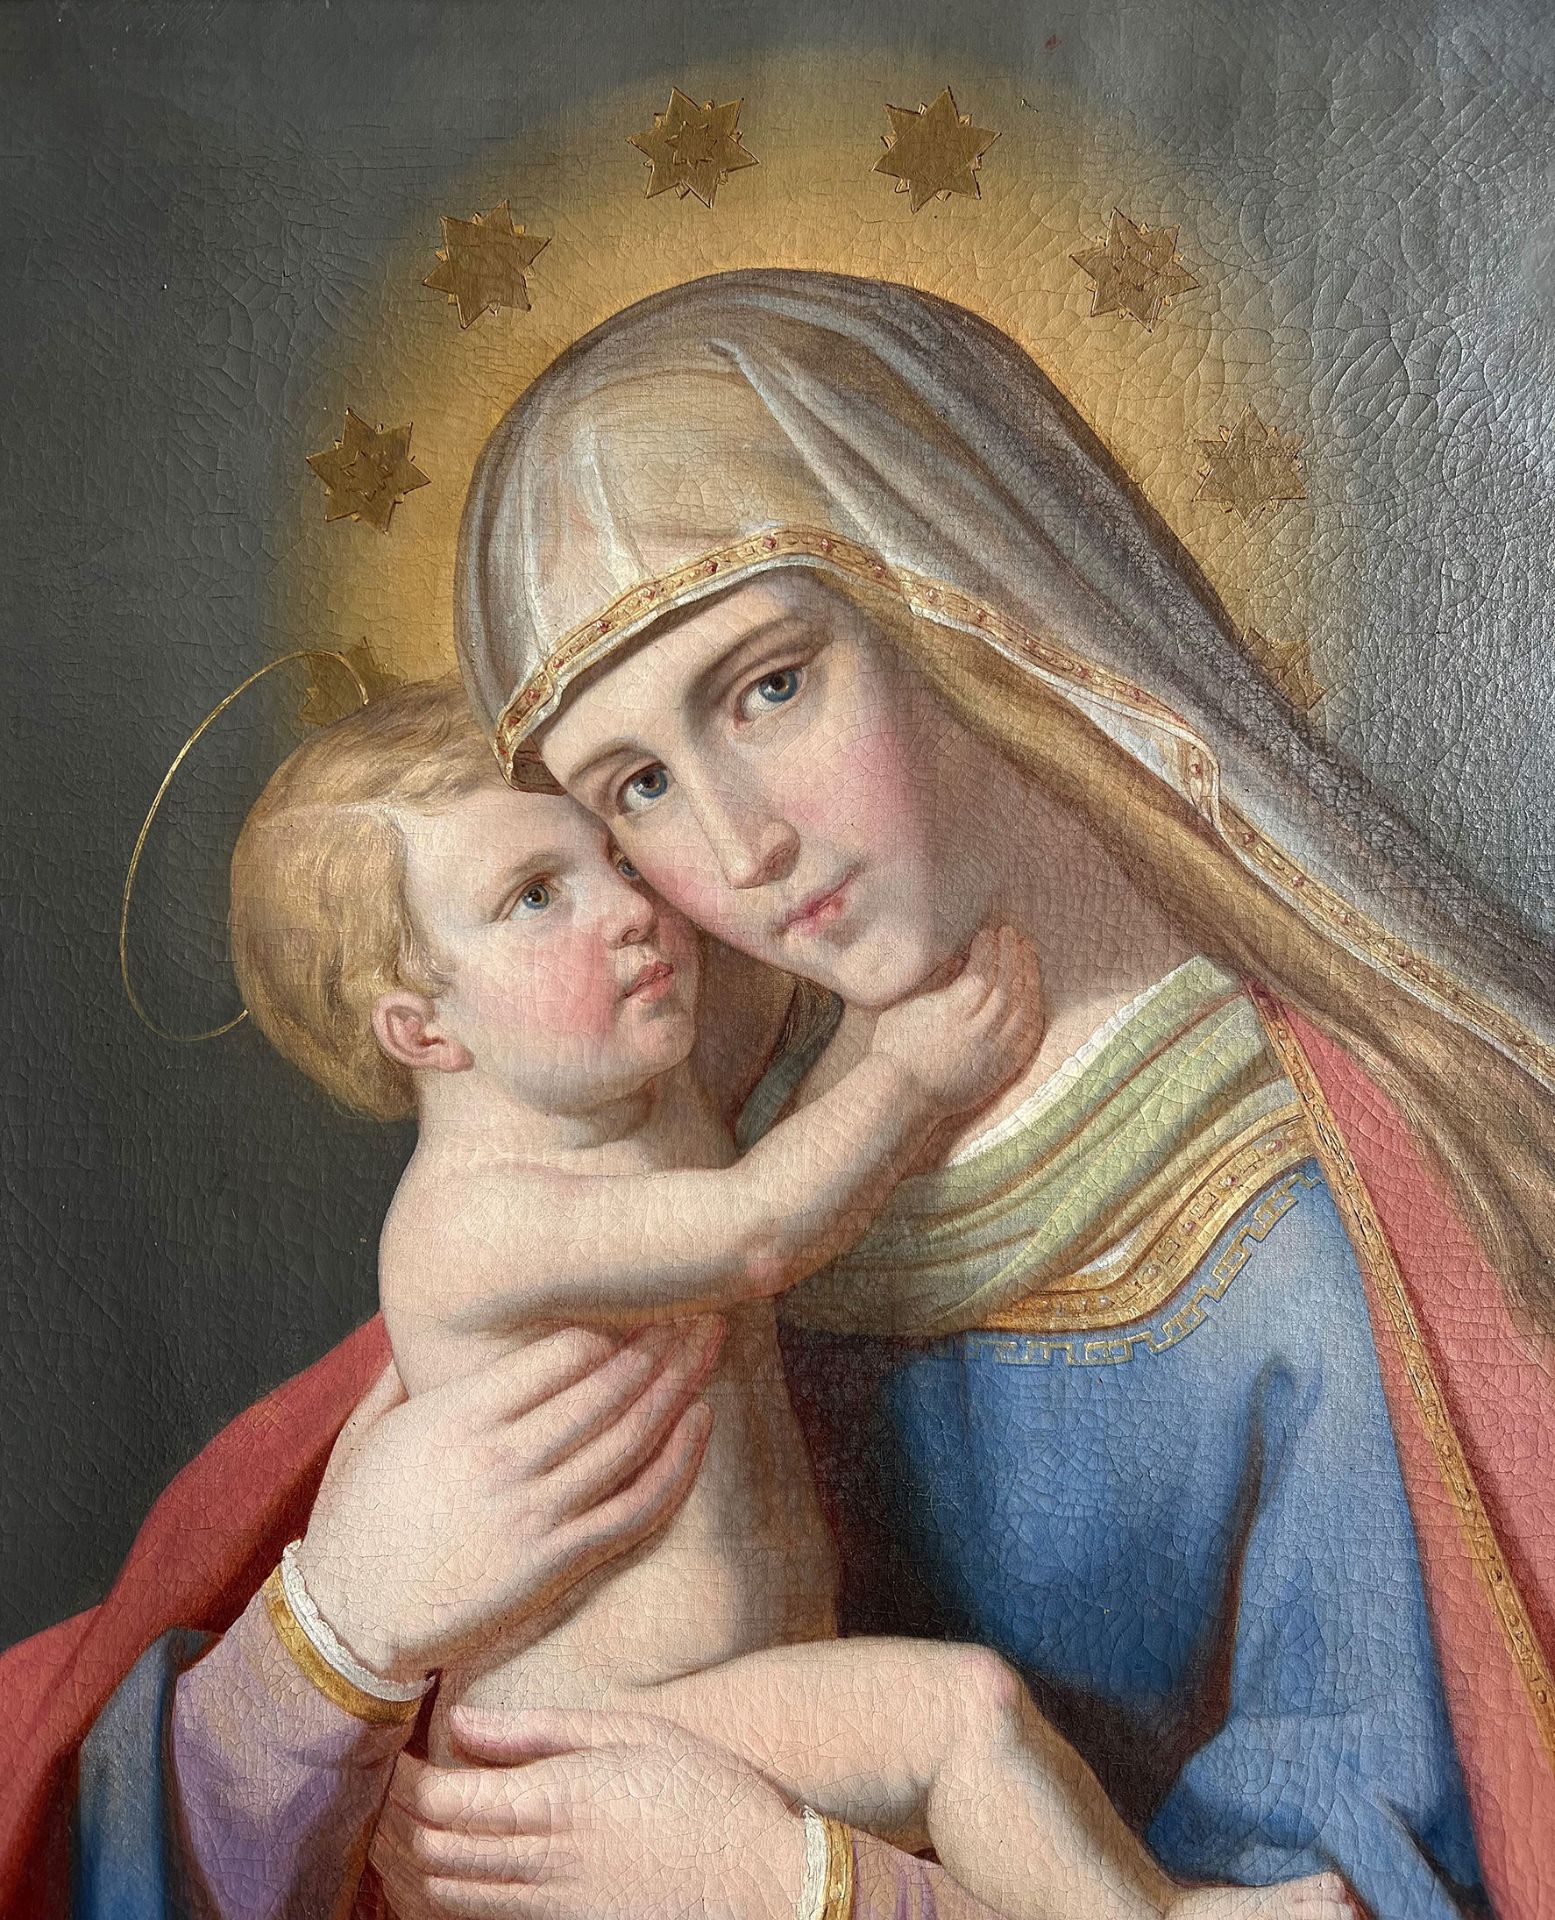 Maria mit dem Jeusknaben/ St. Mary with baby Jesus. Nazarener bzw Präraffaelitisch, Mitte 19. Jh., - Bild 4 aus 5